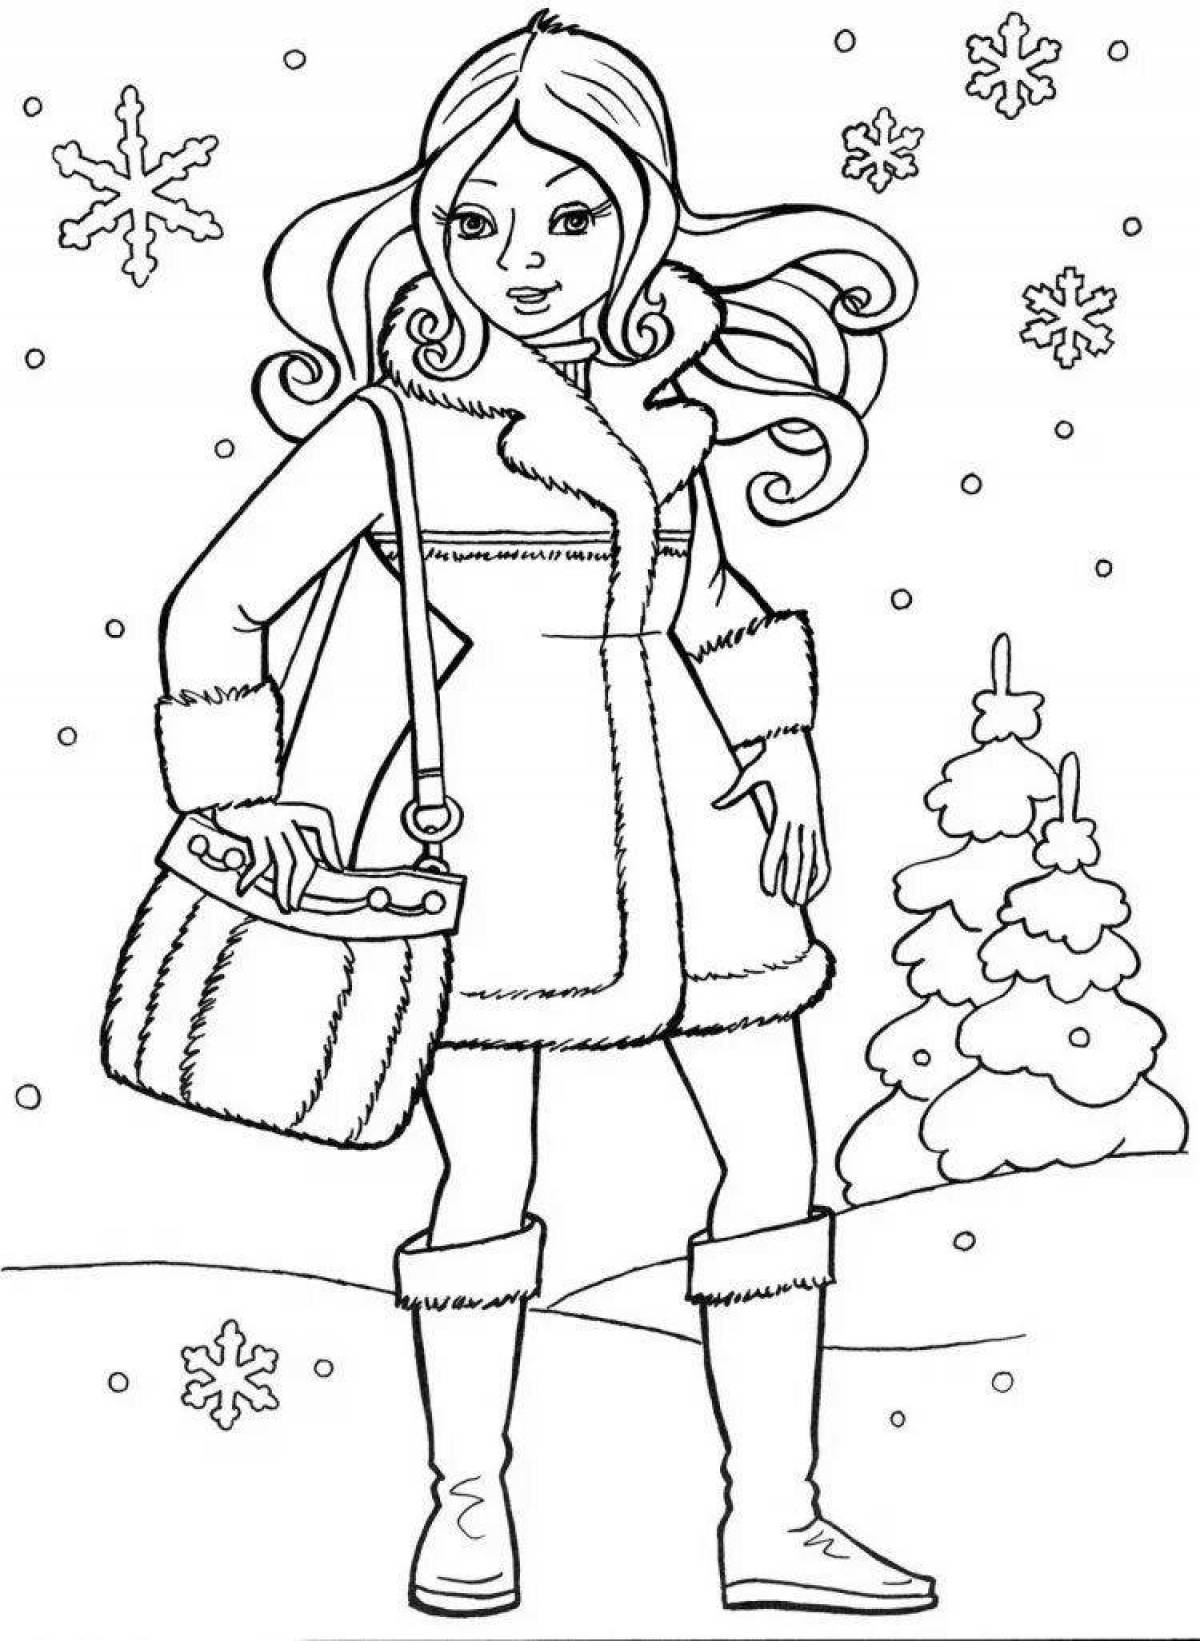 Раскраски Девушка, Раскраска Девушка в зимнем одежде зимняя одежда.